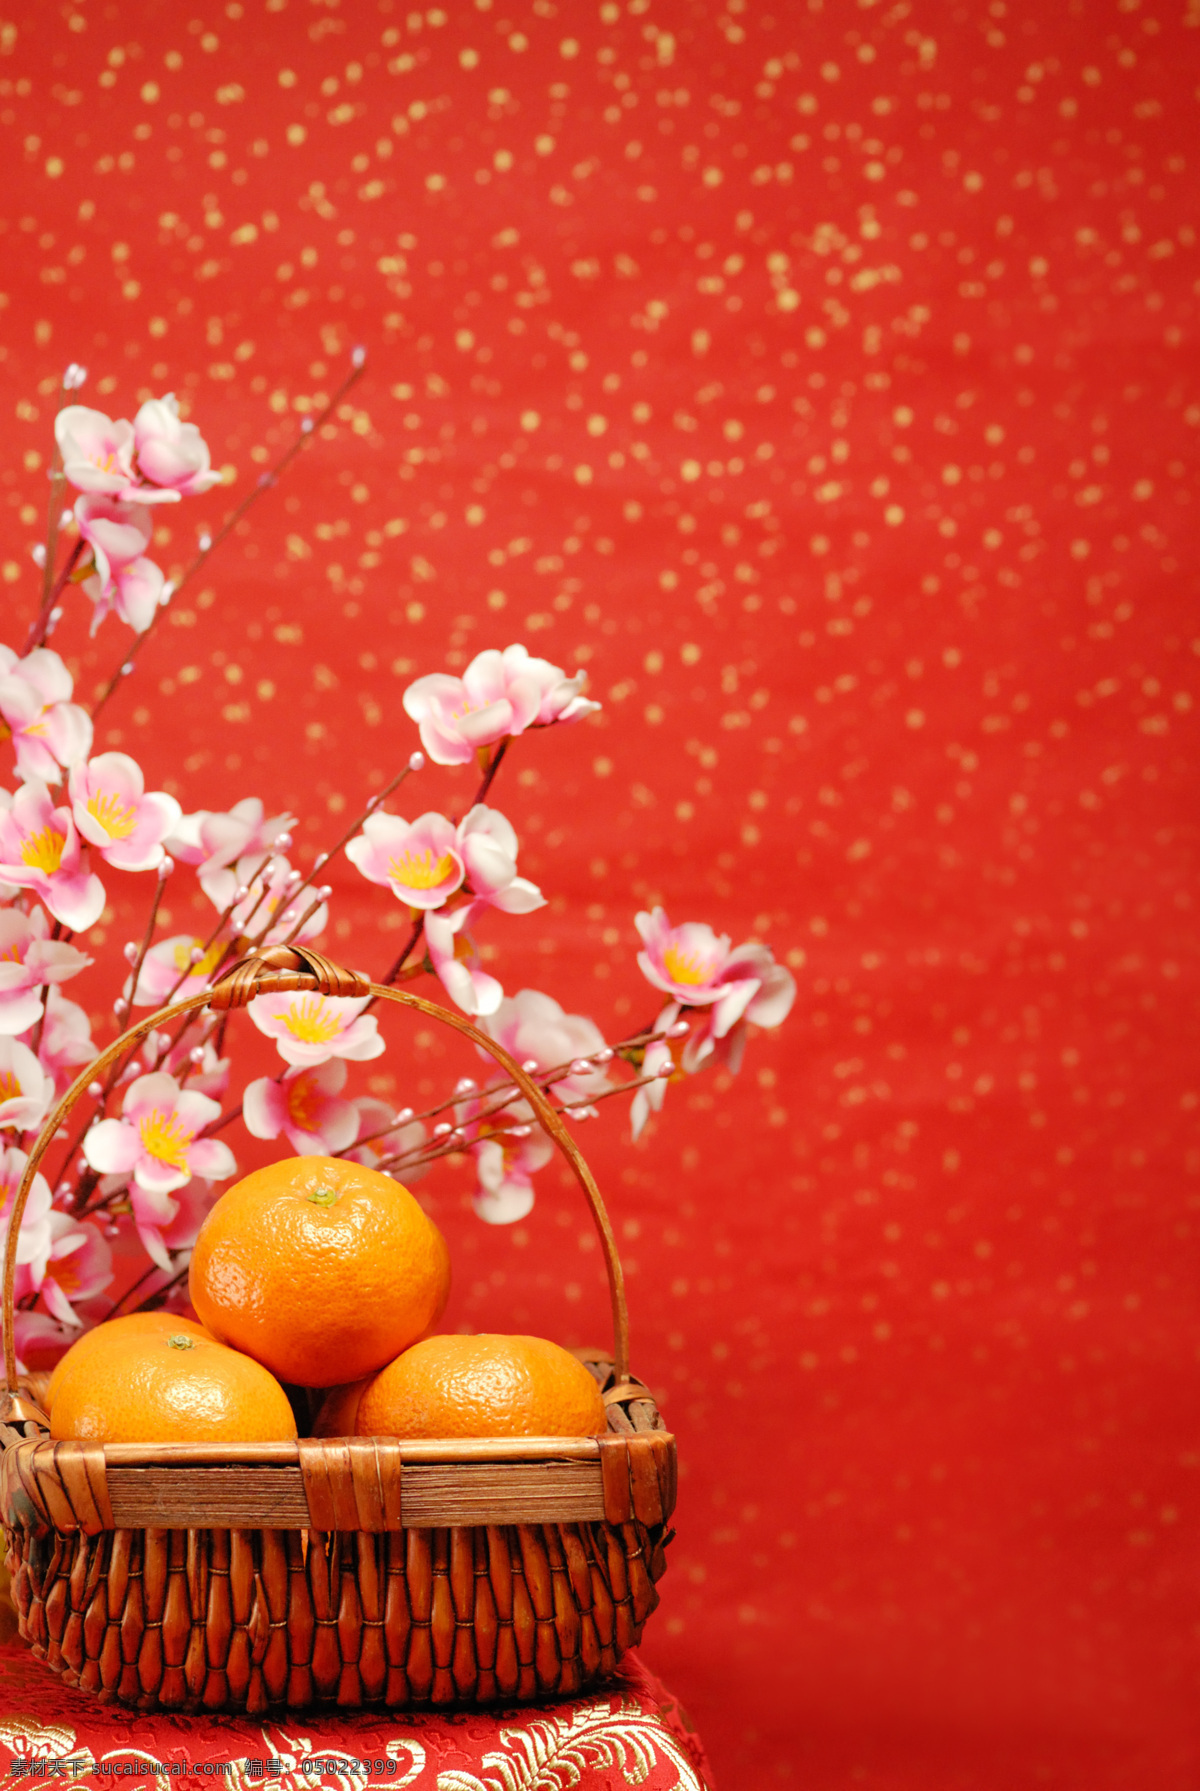 中国红 橘子 中国新年 吉祥如意 新年大吉 新年素材 春节 过年 吉利 财运旺 文化艺术 节日庆祝